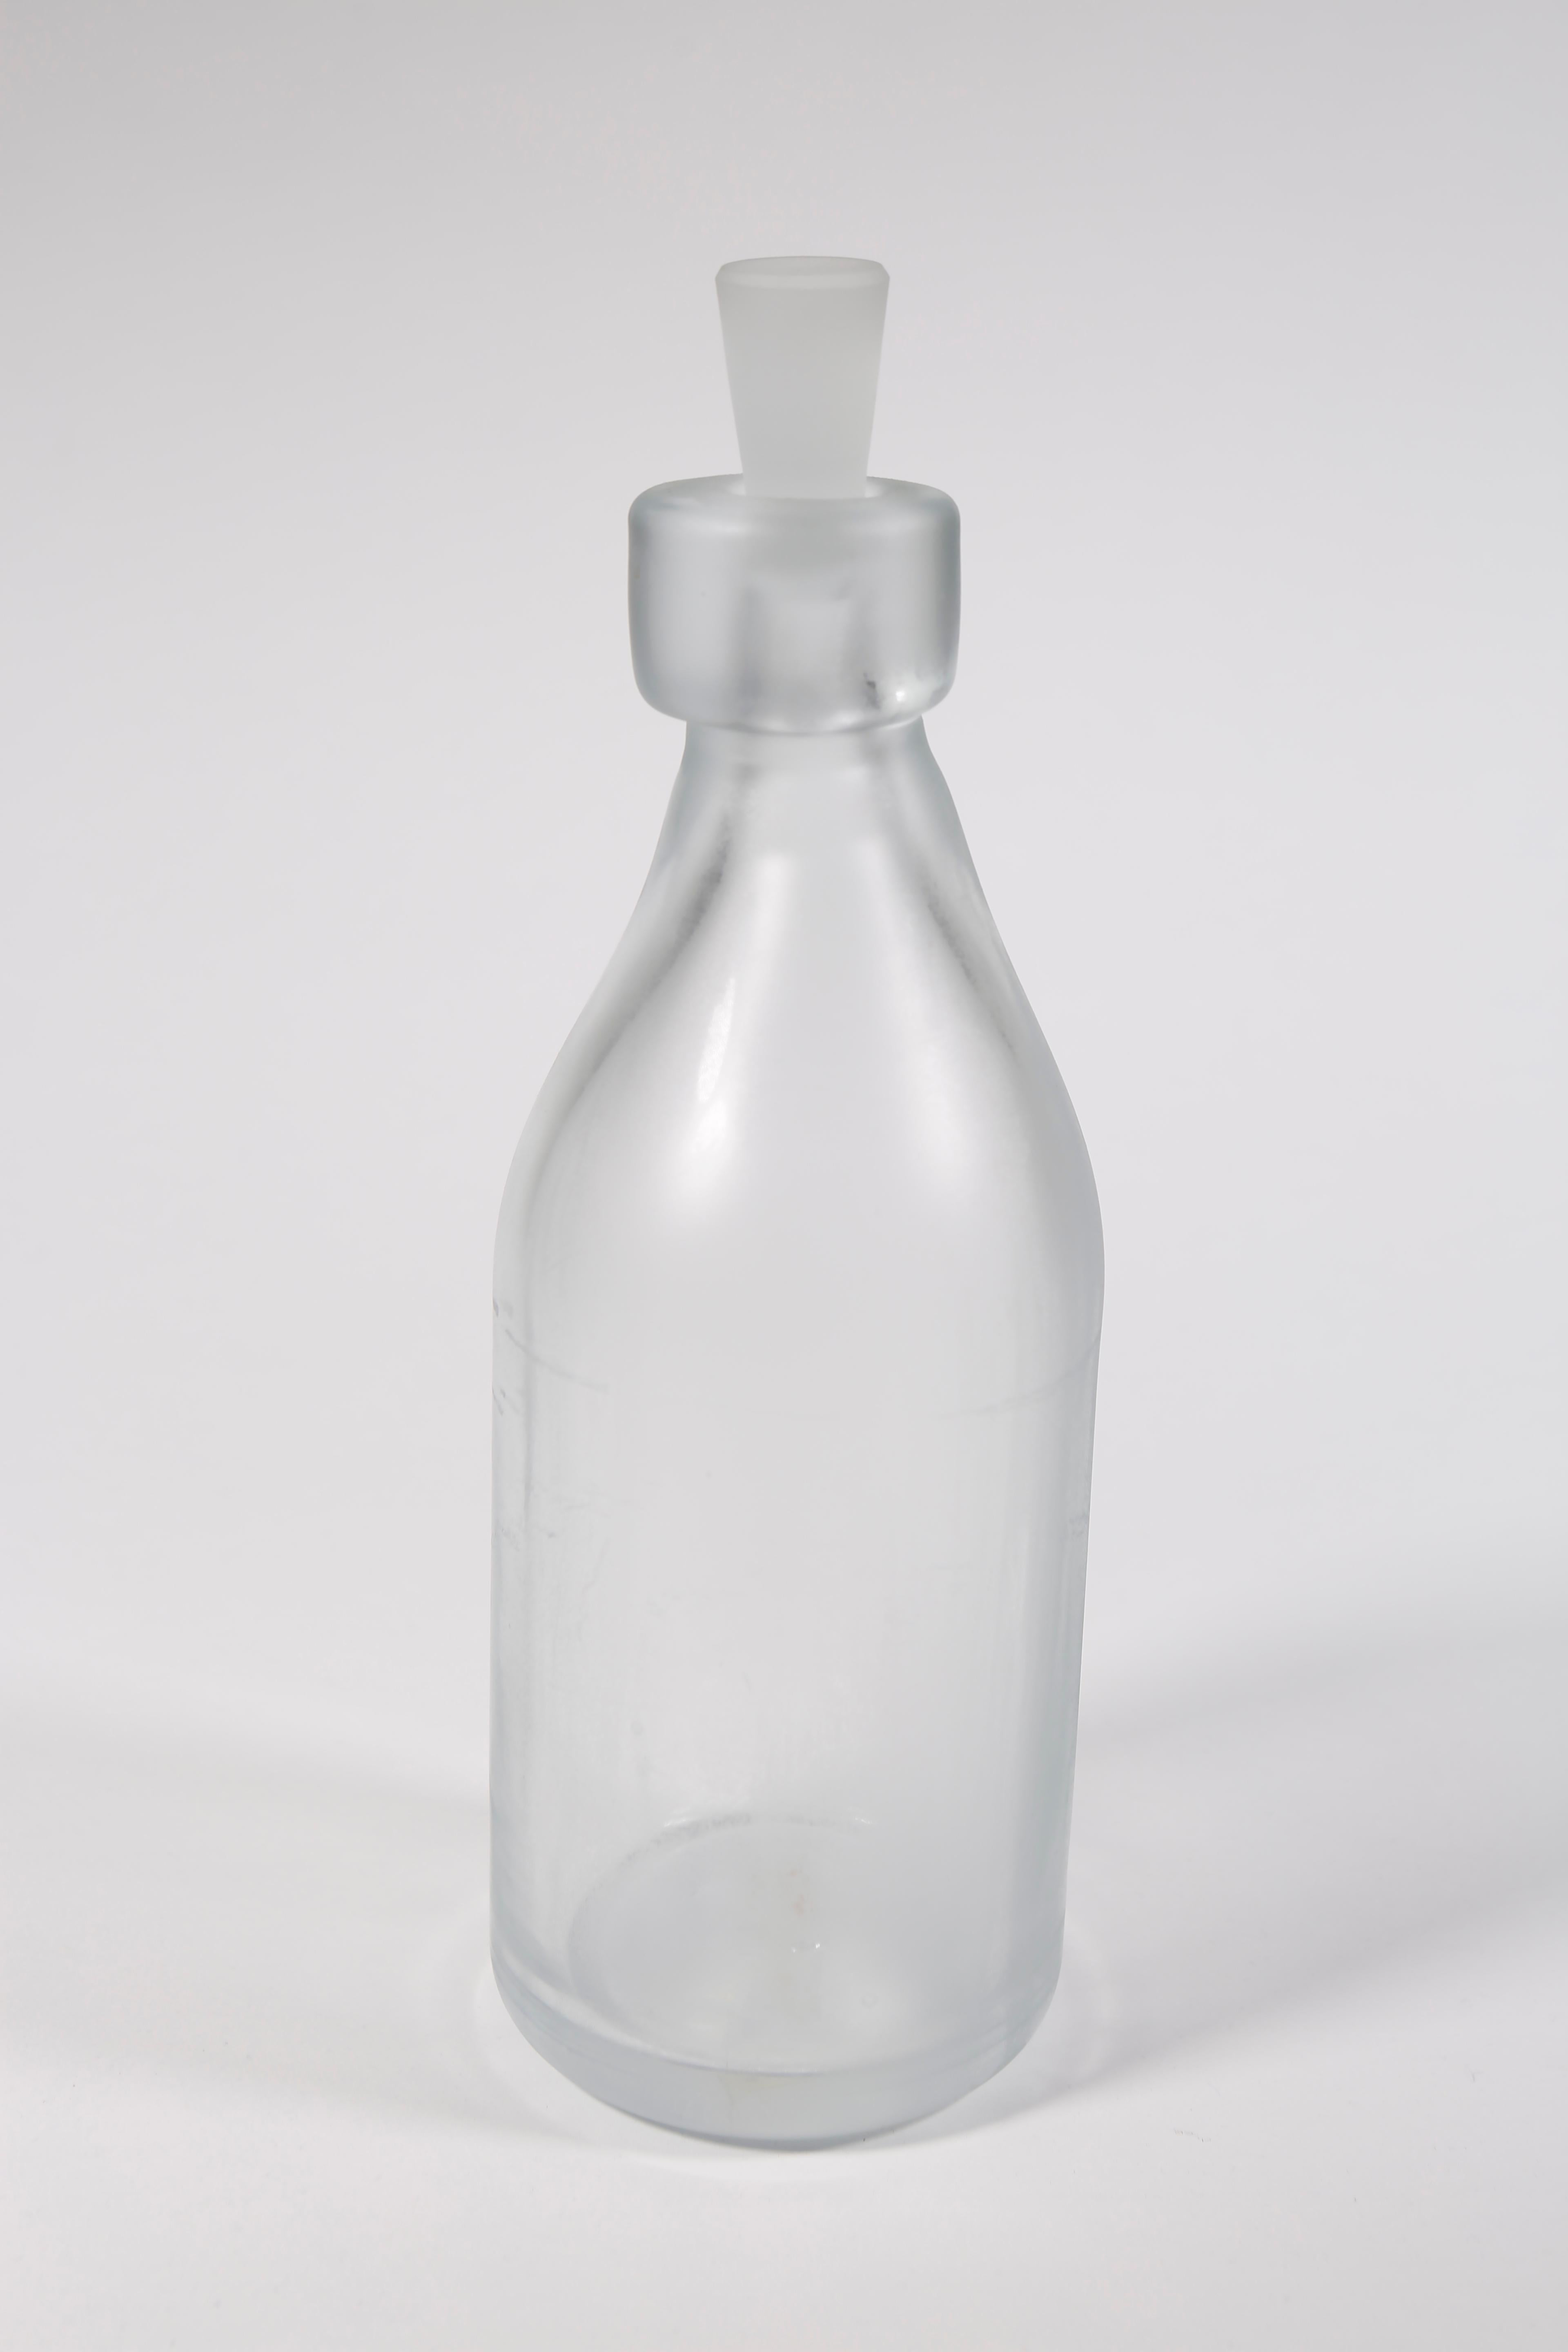 Whole Nother Melk Bottles/Vases: Etched Blown Glass, Chicago, Jordan Mozer, 2013 For Sale 6